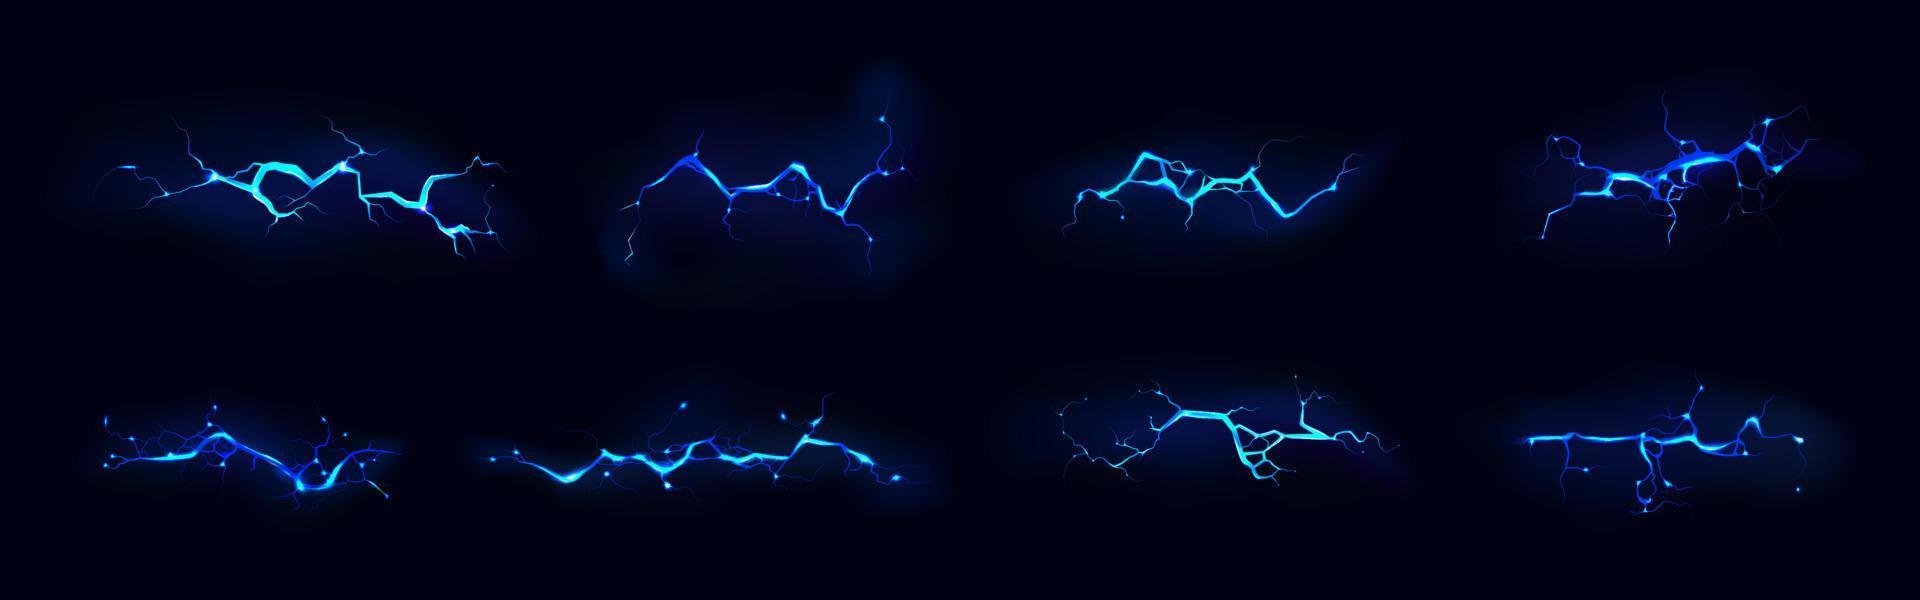 Blitz, elektrischer Schlag während des nächtlichen Sturms vektor